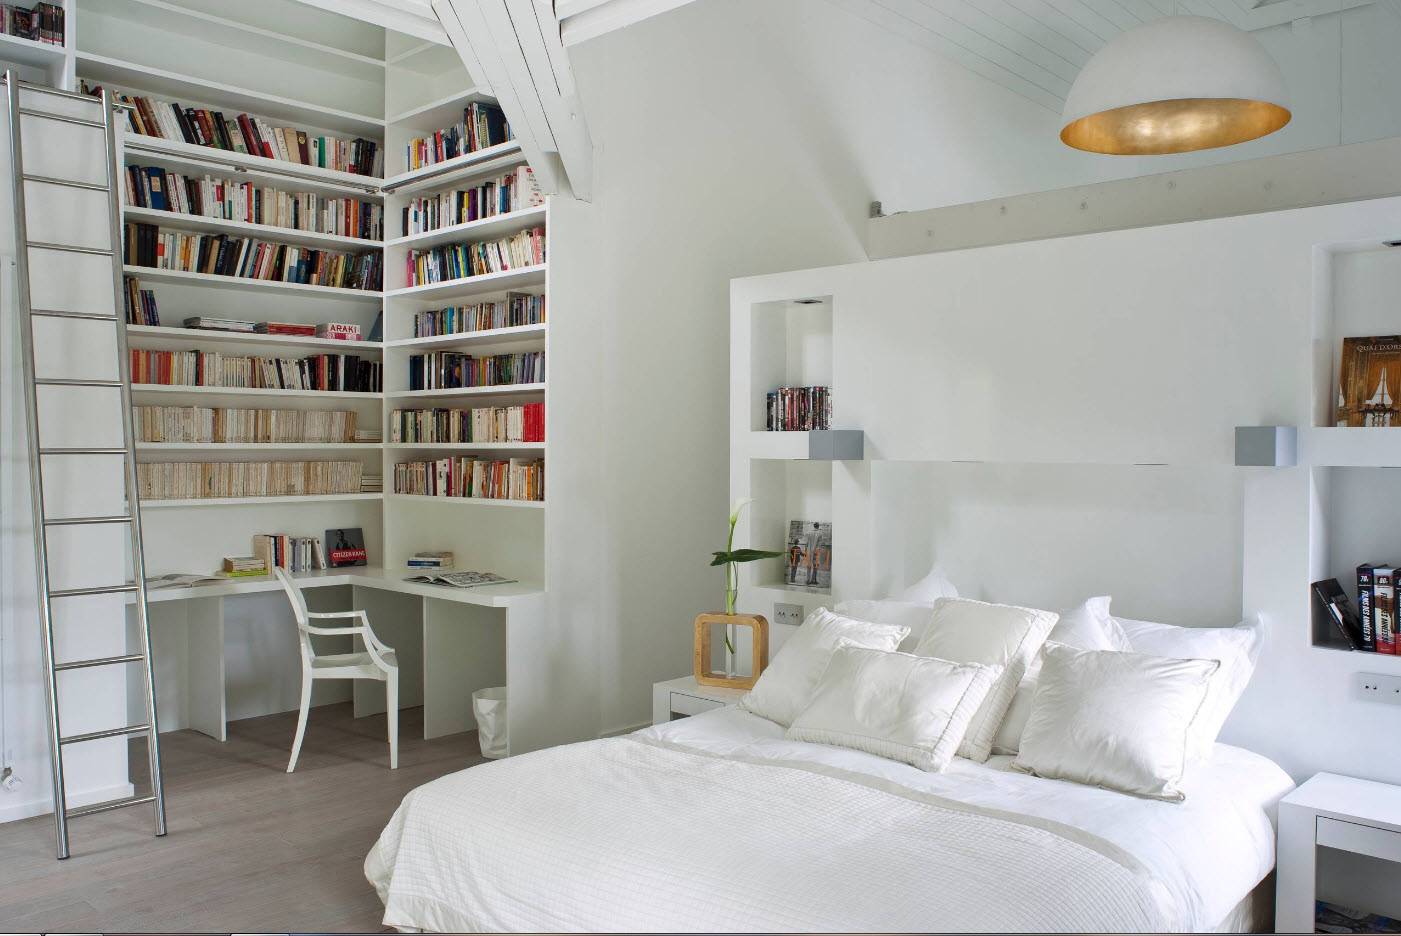 Красивые спальни - 175 фото с идеями для дизайна интерьера